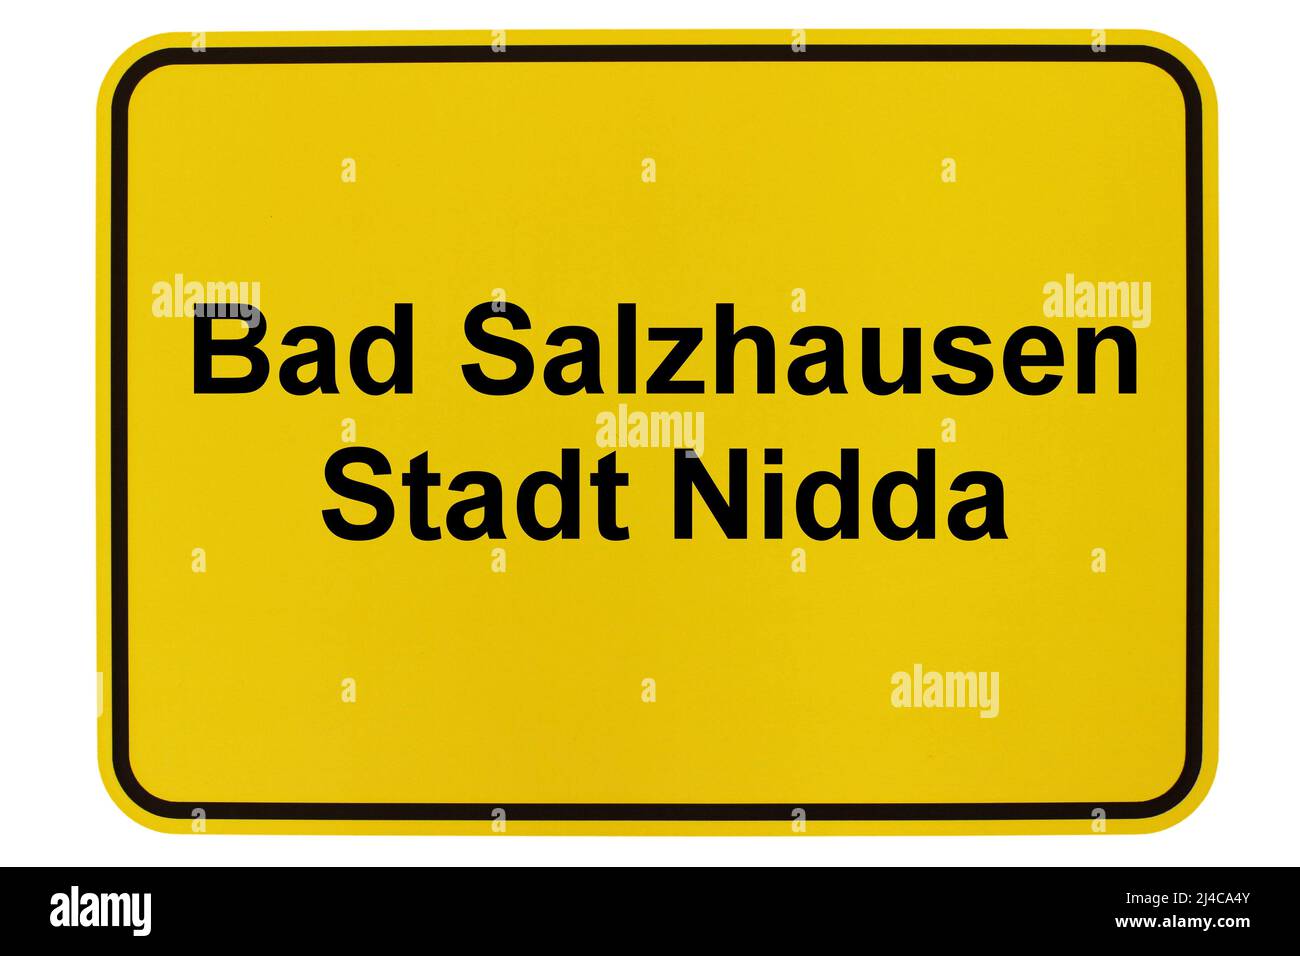 Impressionen aus Bad Salzhausen, einem Stadtteil von Nidda in Hessen Stock Photo